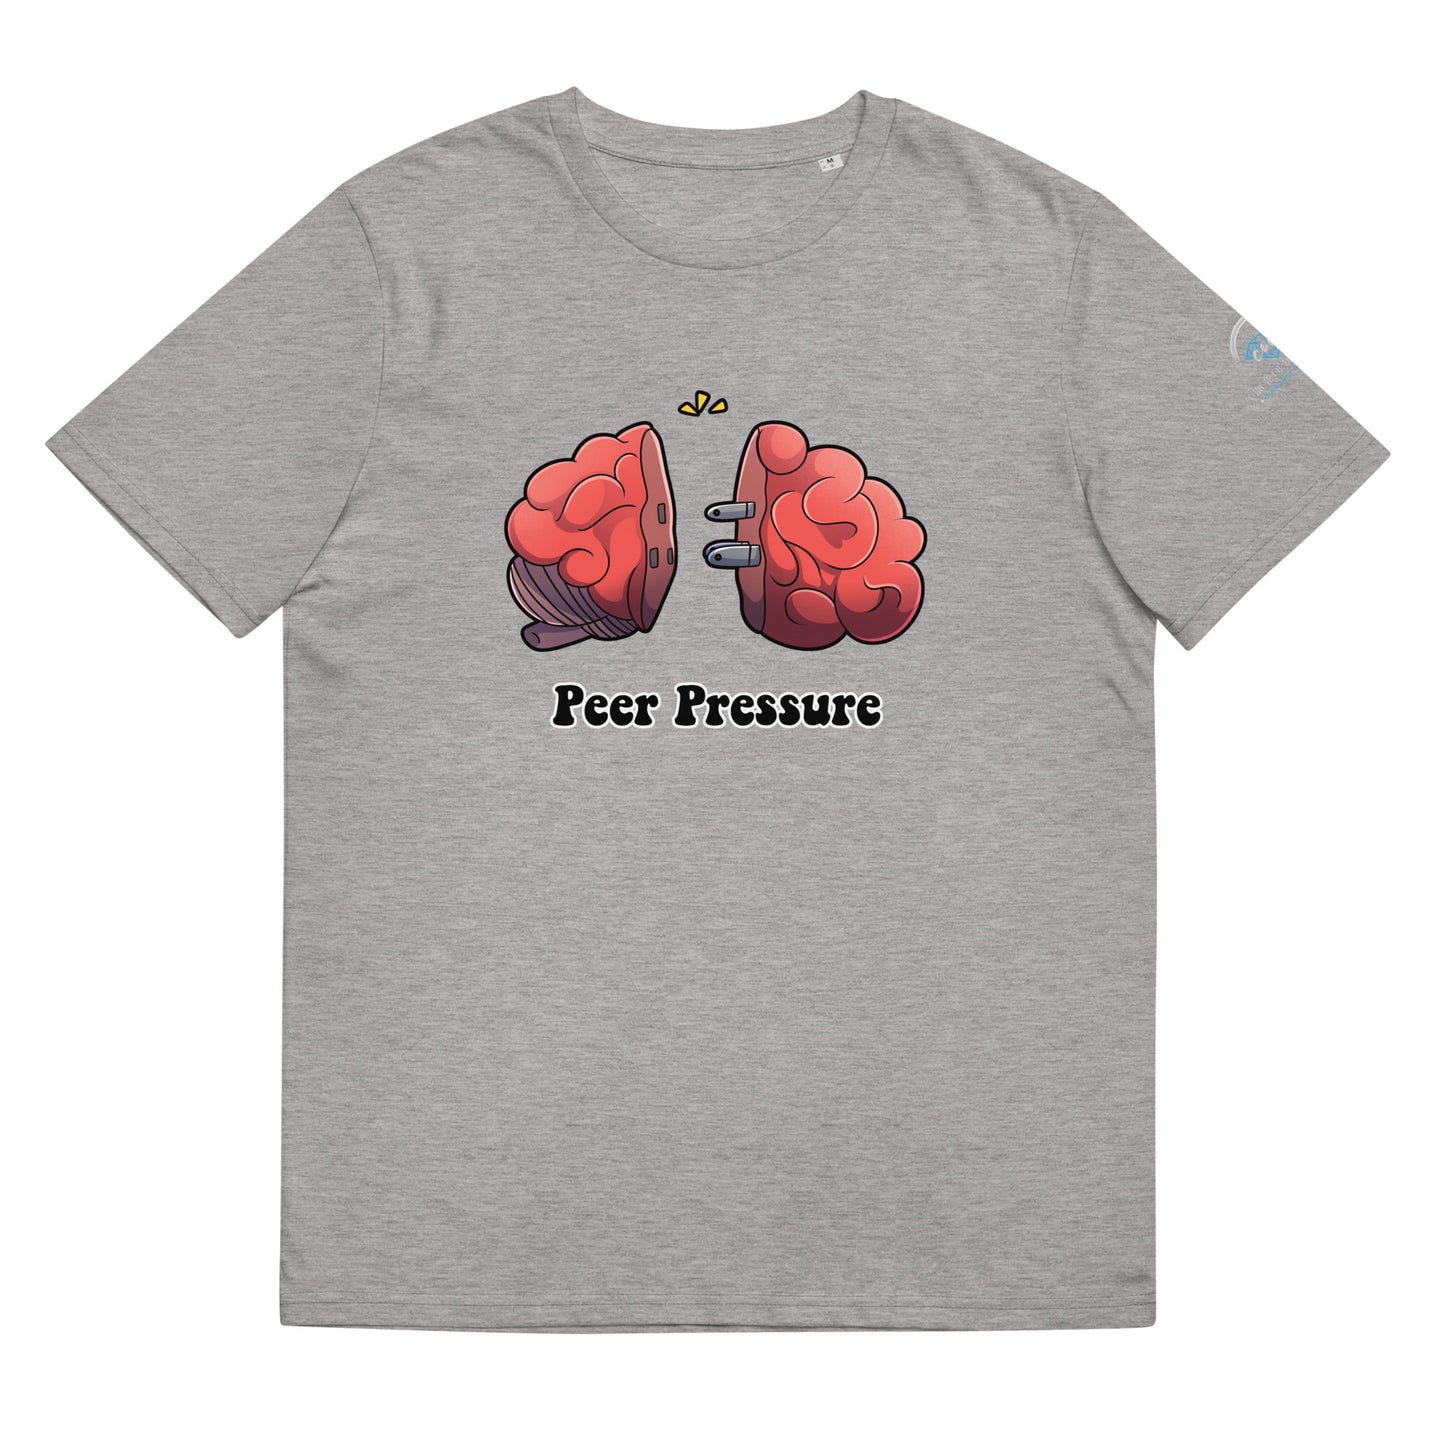 Peer Pressure T-Shirt